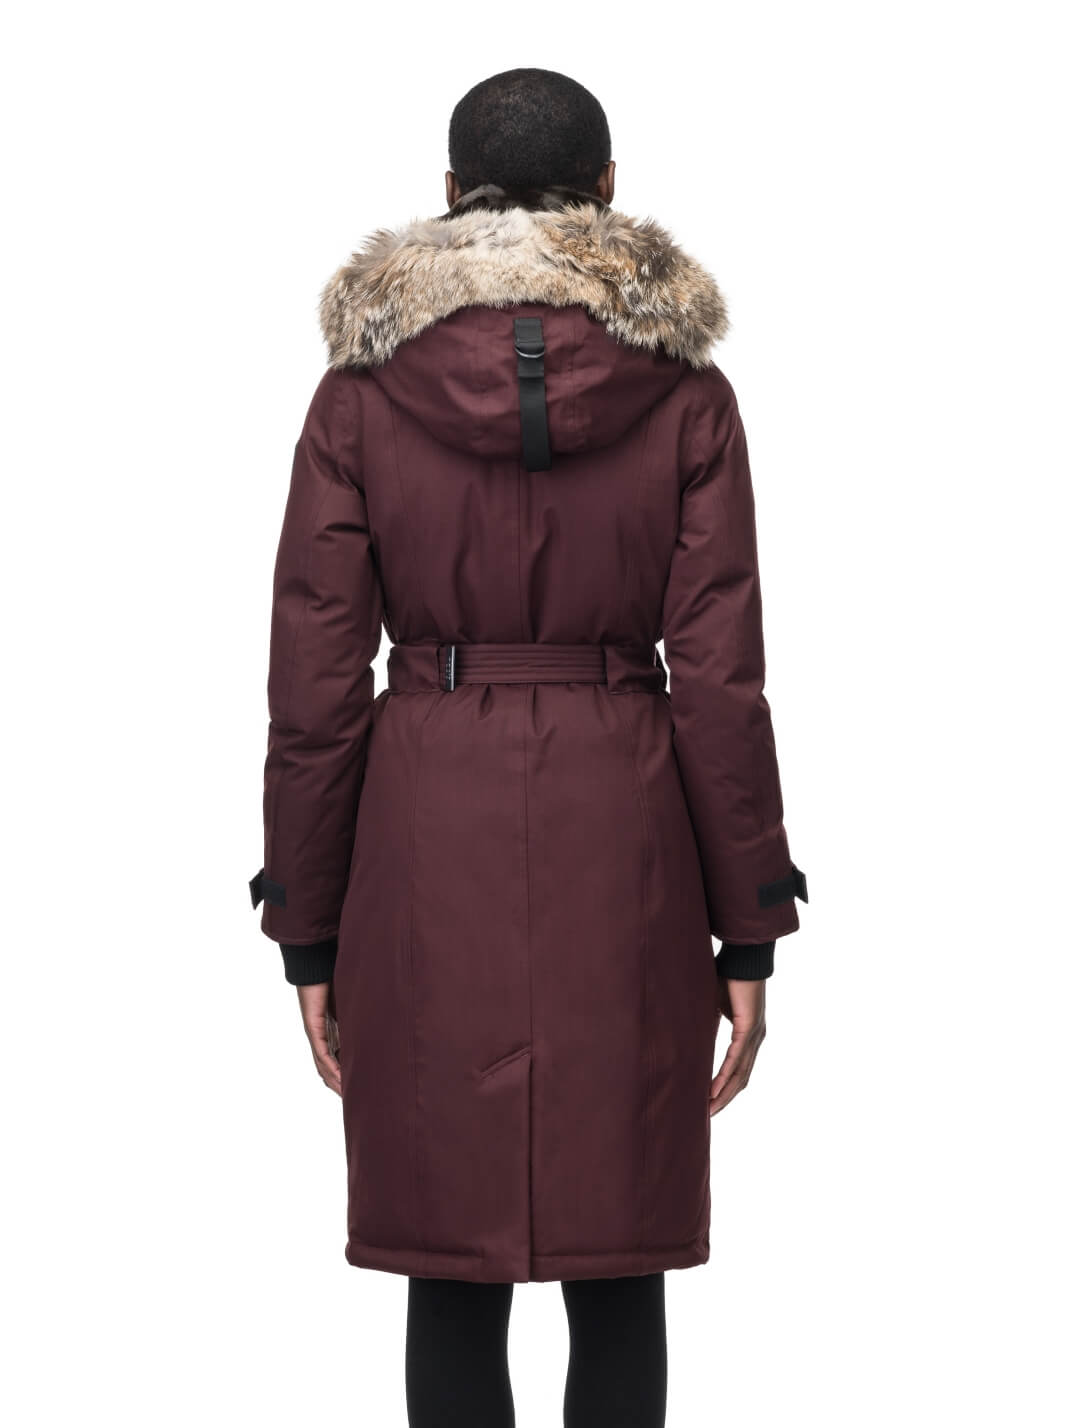 Abby Women's Parka, Women's Winter Coat